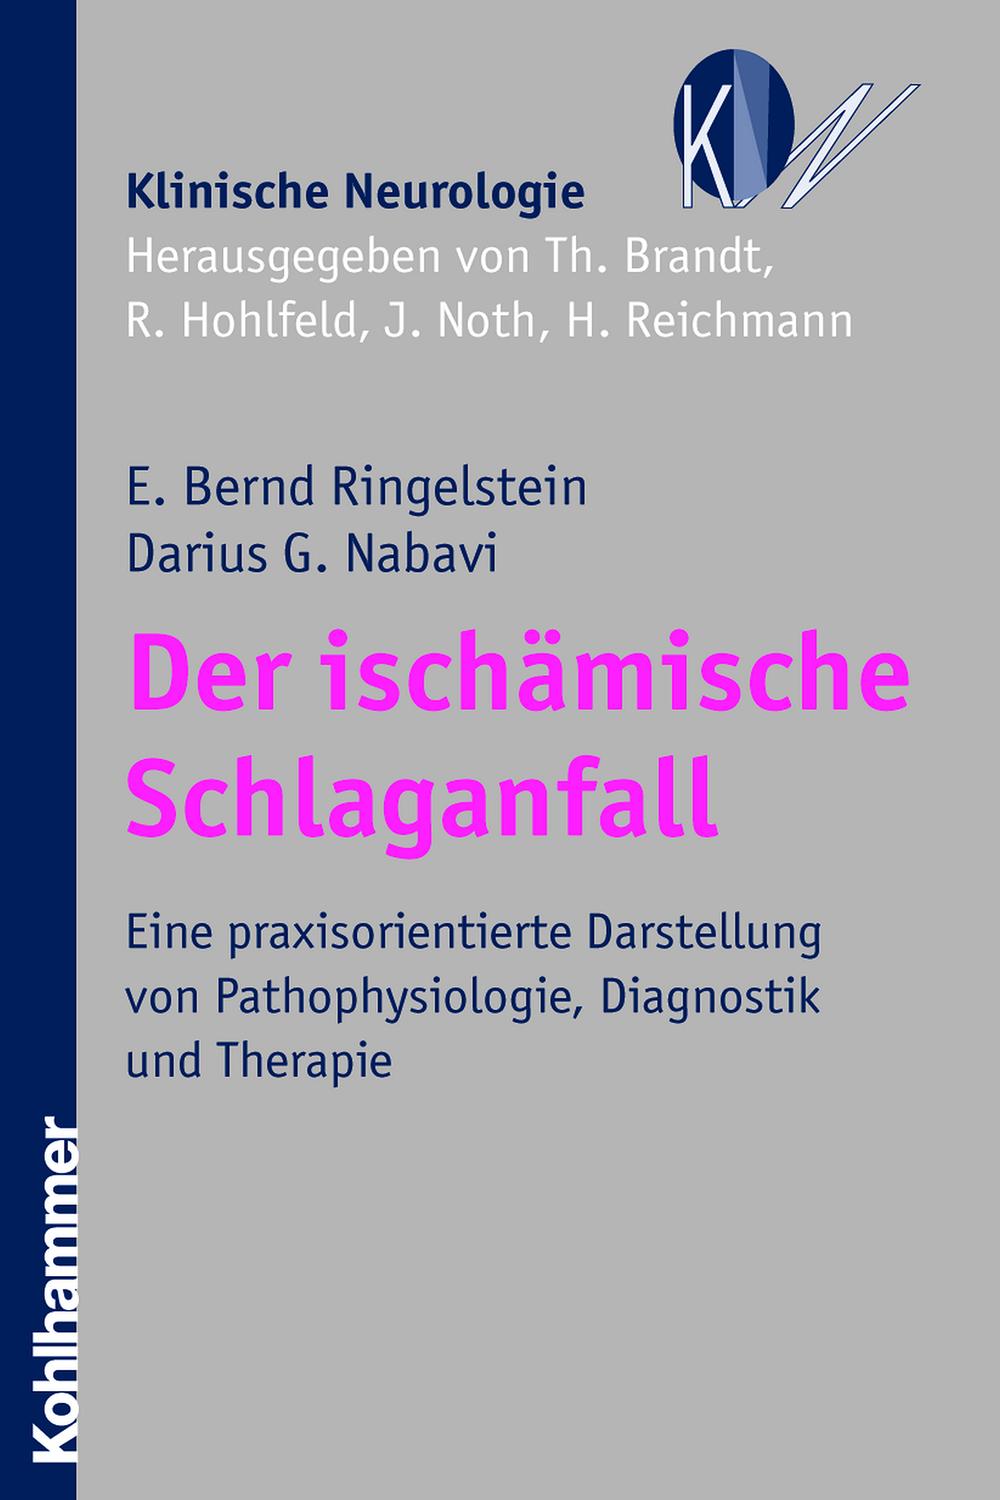 Der ischämische Schlaganfall - E. Bernd Ringelstein, Darius G. Nabavi